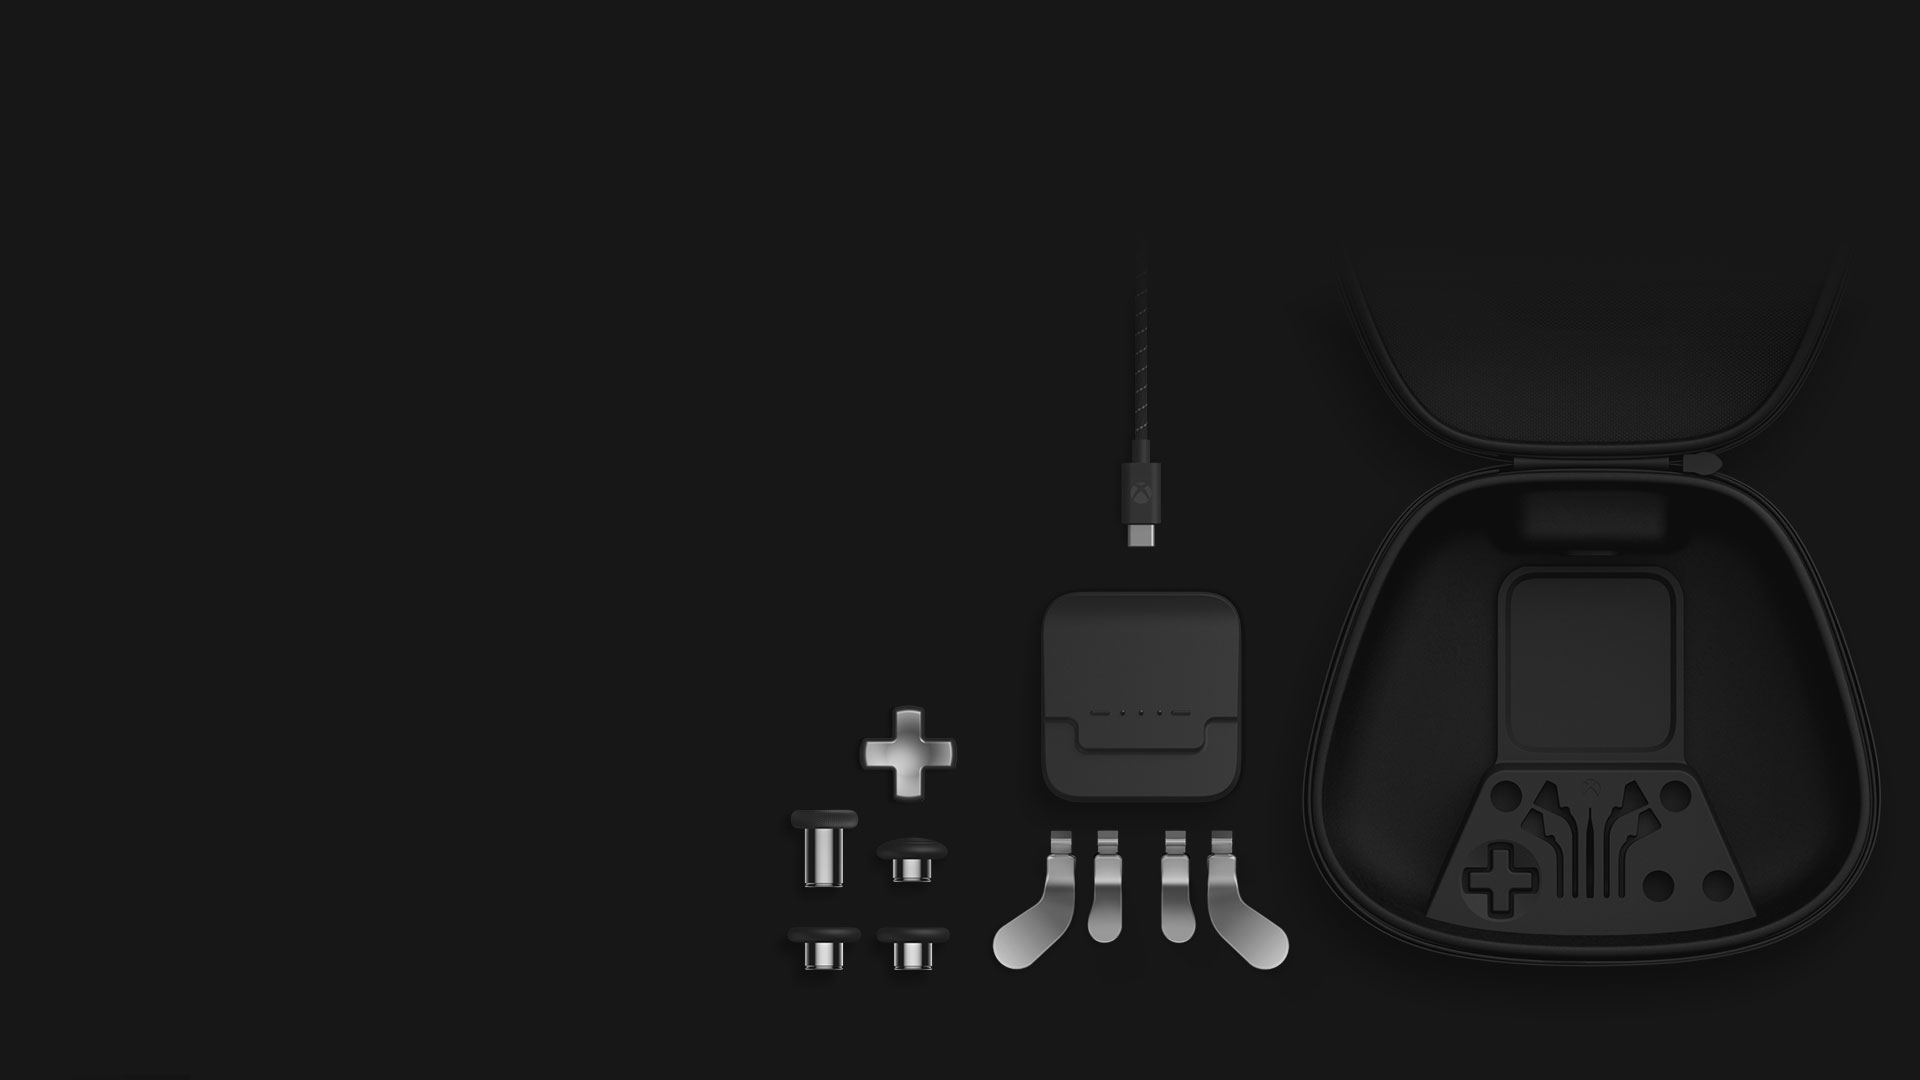 Vista isométrica del contenido del Pack completo de componentes: palancas de control, pad direccional, palancas, soporte de carga, cable USB-C y estuche.